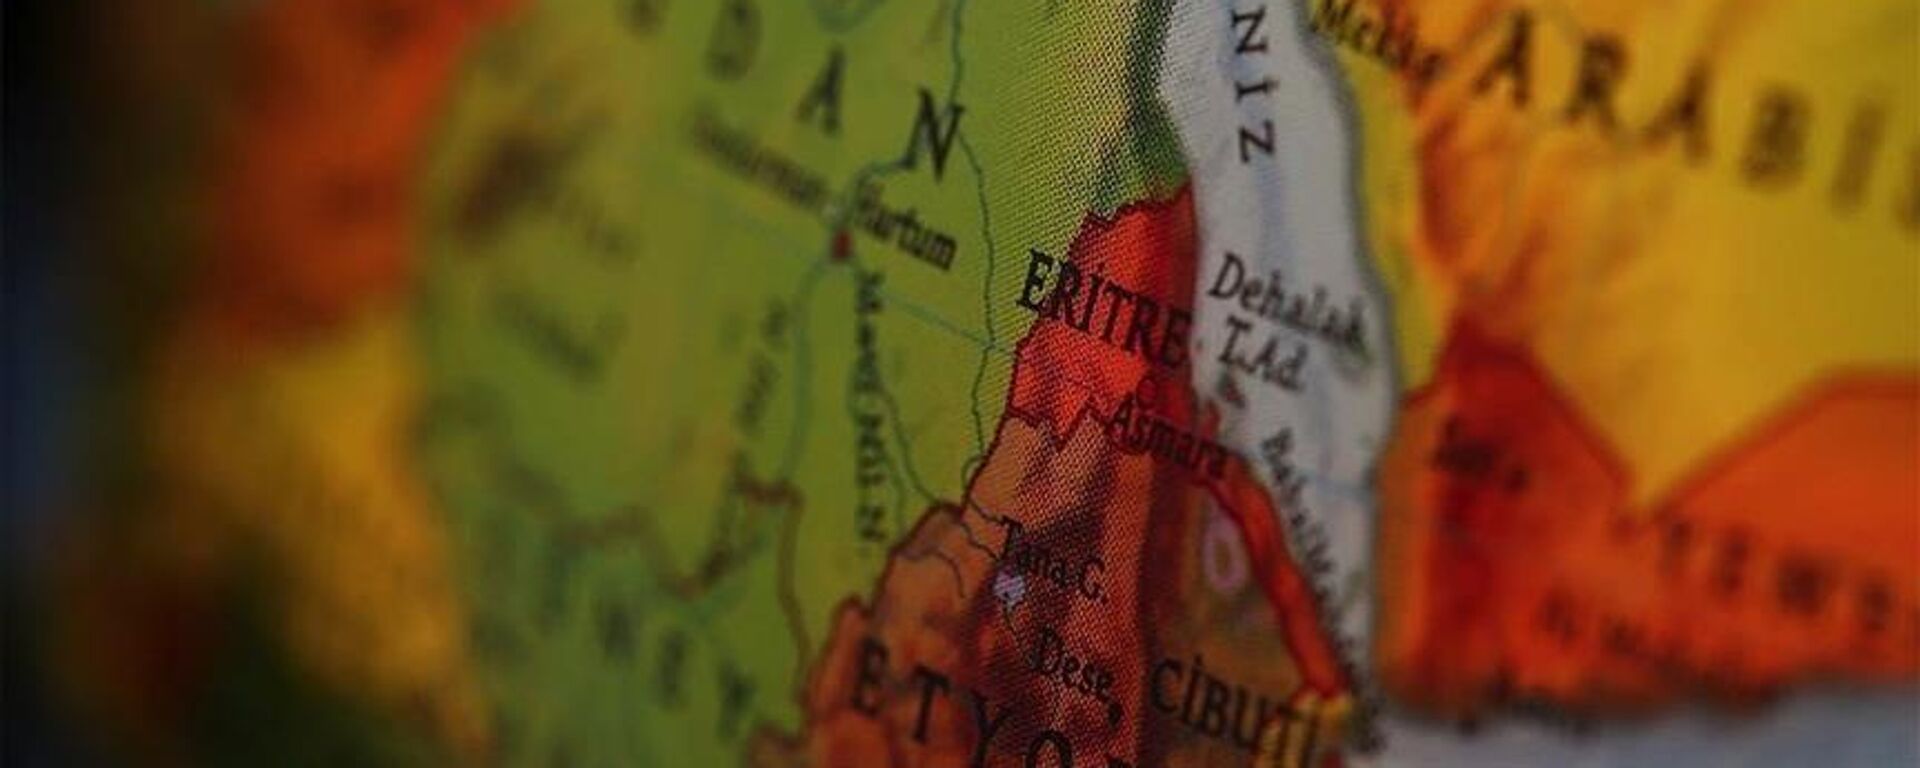 Eritre, dünya haritası - Sputnik Türkiye, 1920, 03.11.2021